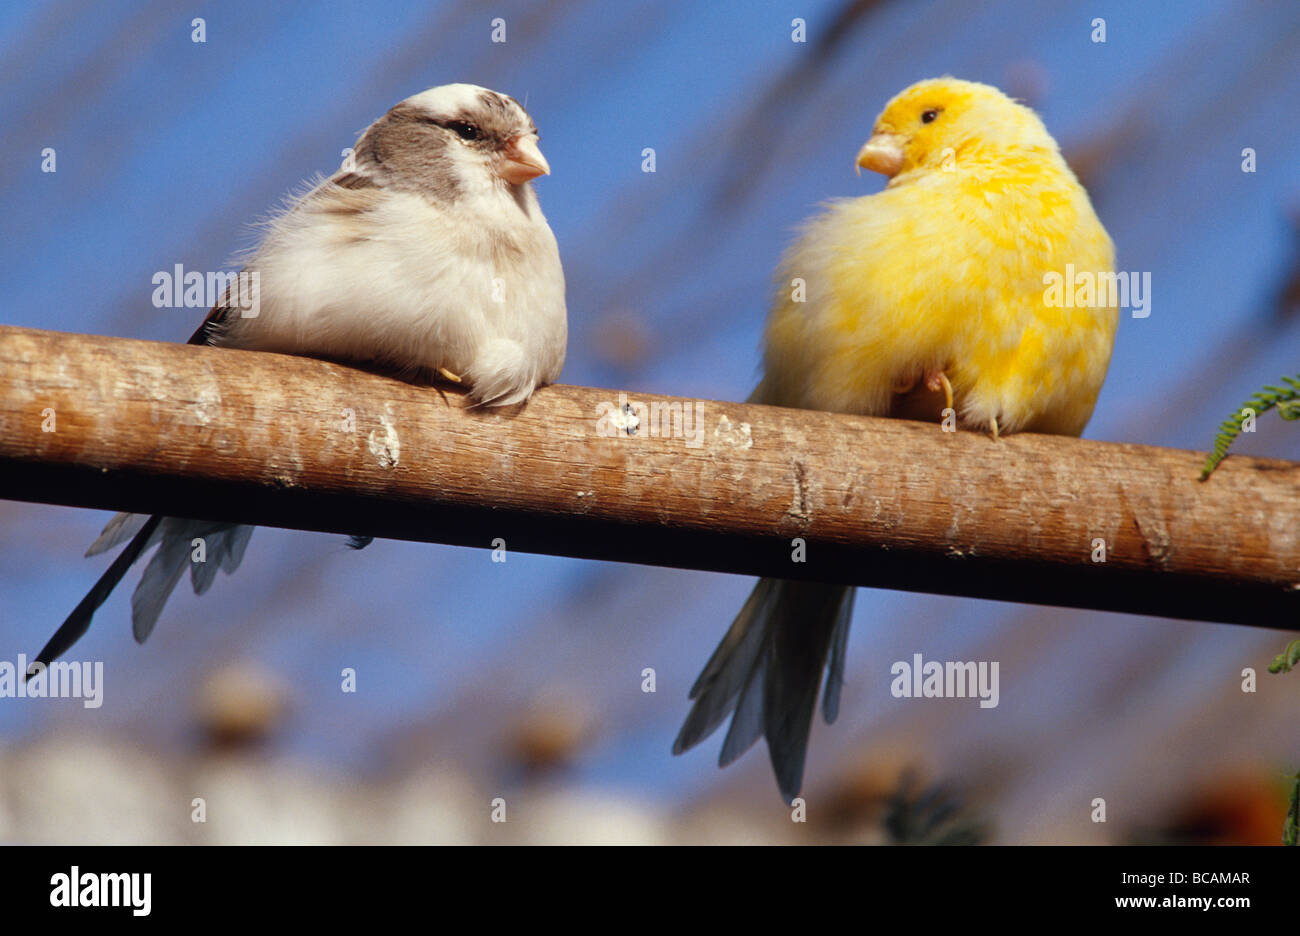 Dos canarios contento sentado en una percha en una pajarera. Foto de stock